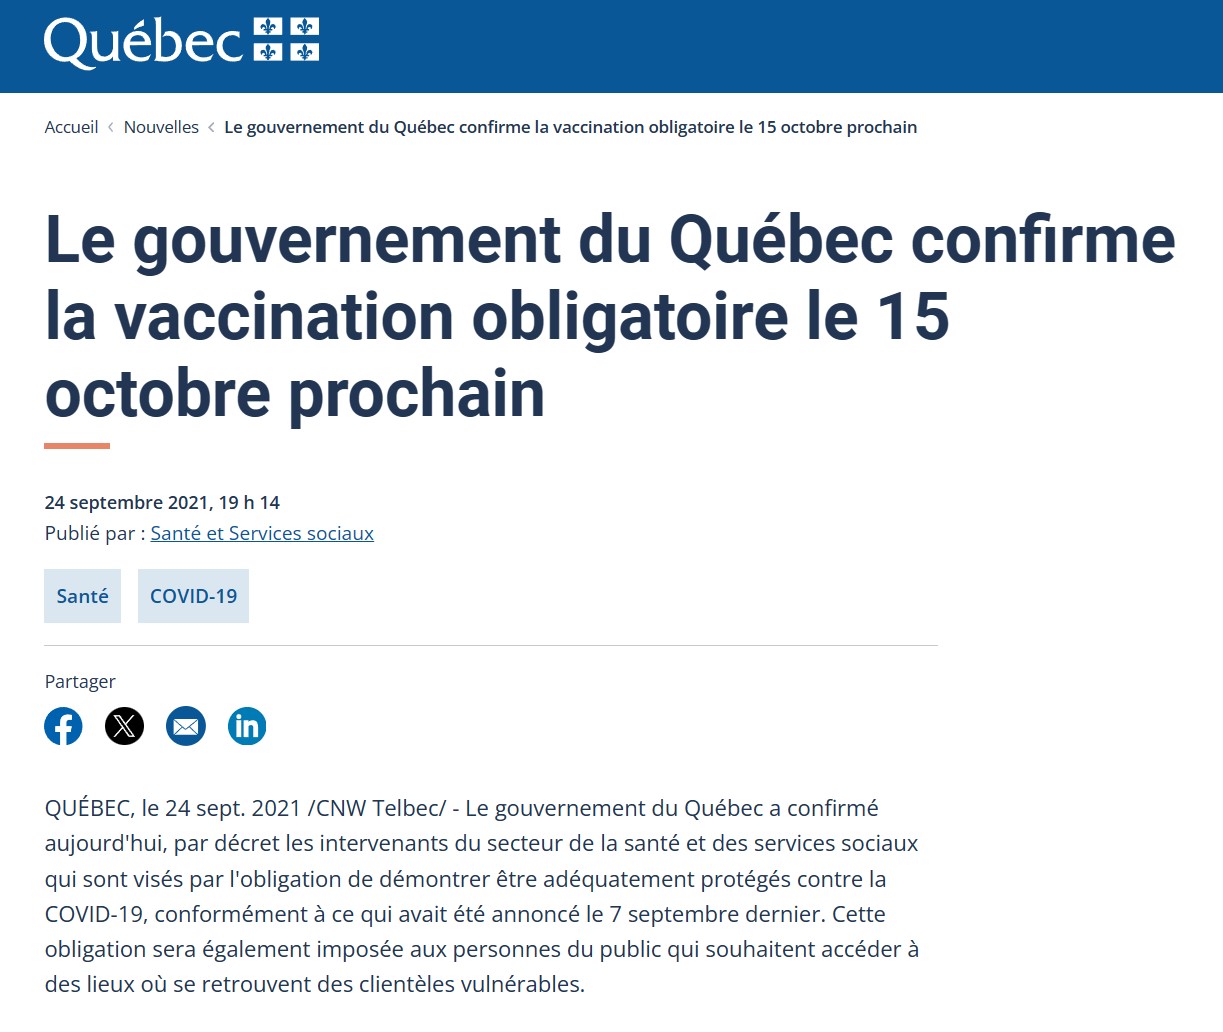 vaccination-obligatoire-pour-le-15-octobre 2021-en-sante-au-quebec.jpg